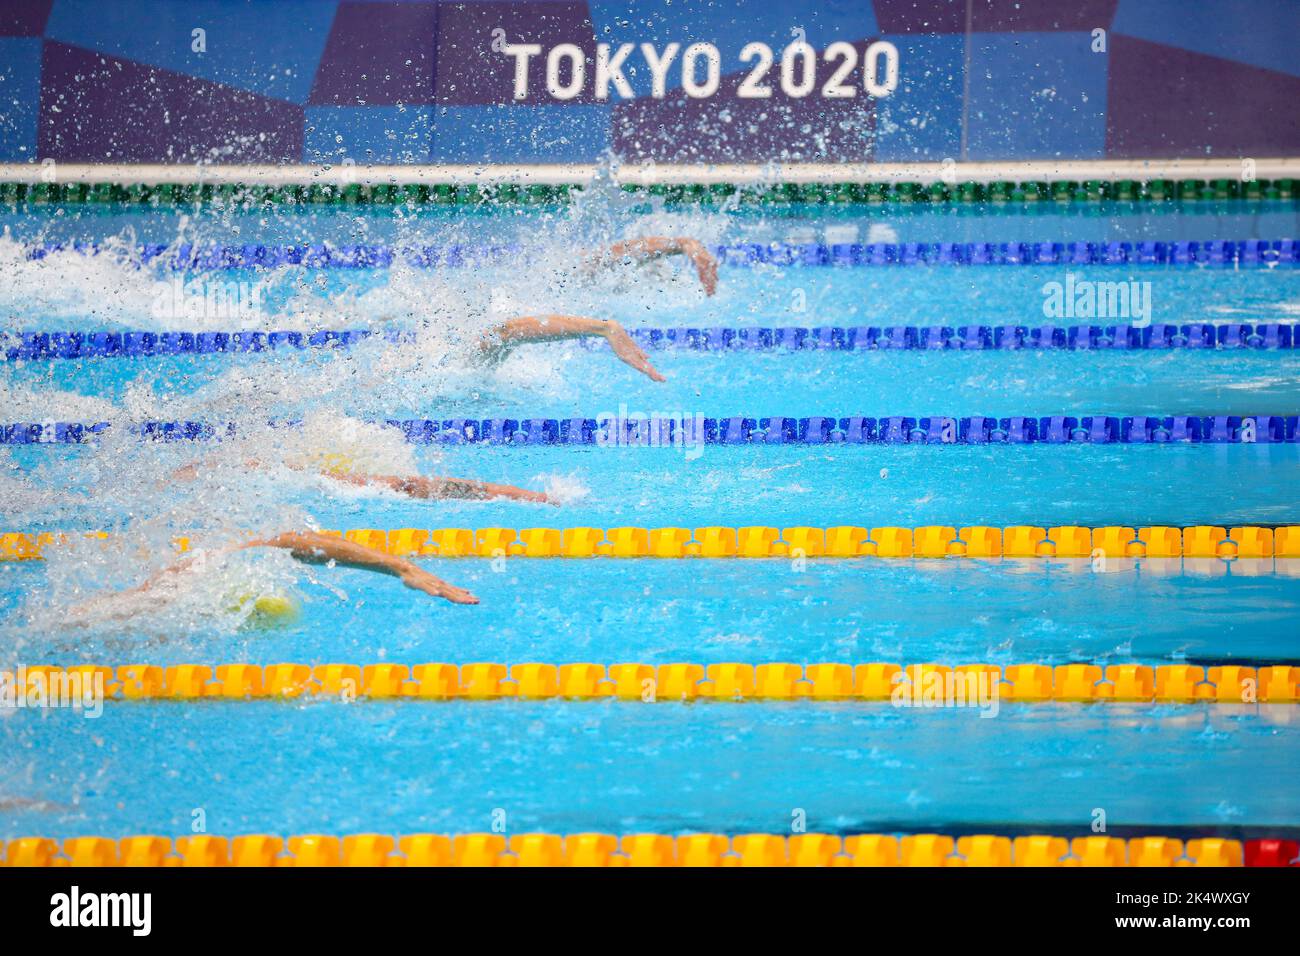 1st AGOSTO 2021 - TOKYO, GIAPPONE: Nuotatori in azione durante la finale di Freestyle 50m femminile ai Giochi Olimpici di Tokyo 2020 (Foto: Mickael Chavet/RX) Foto Stock